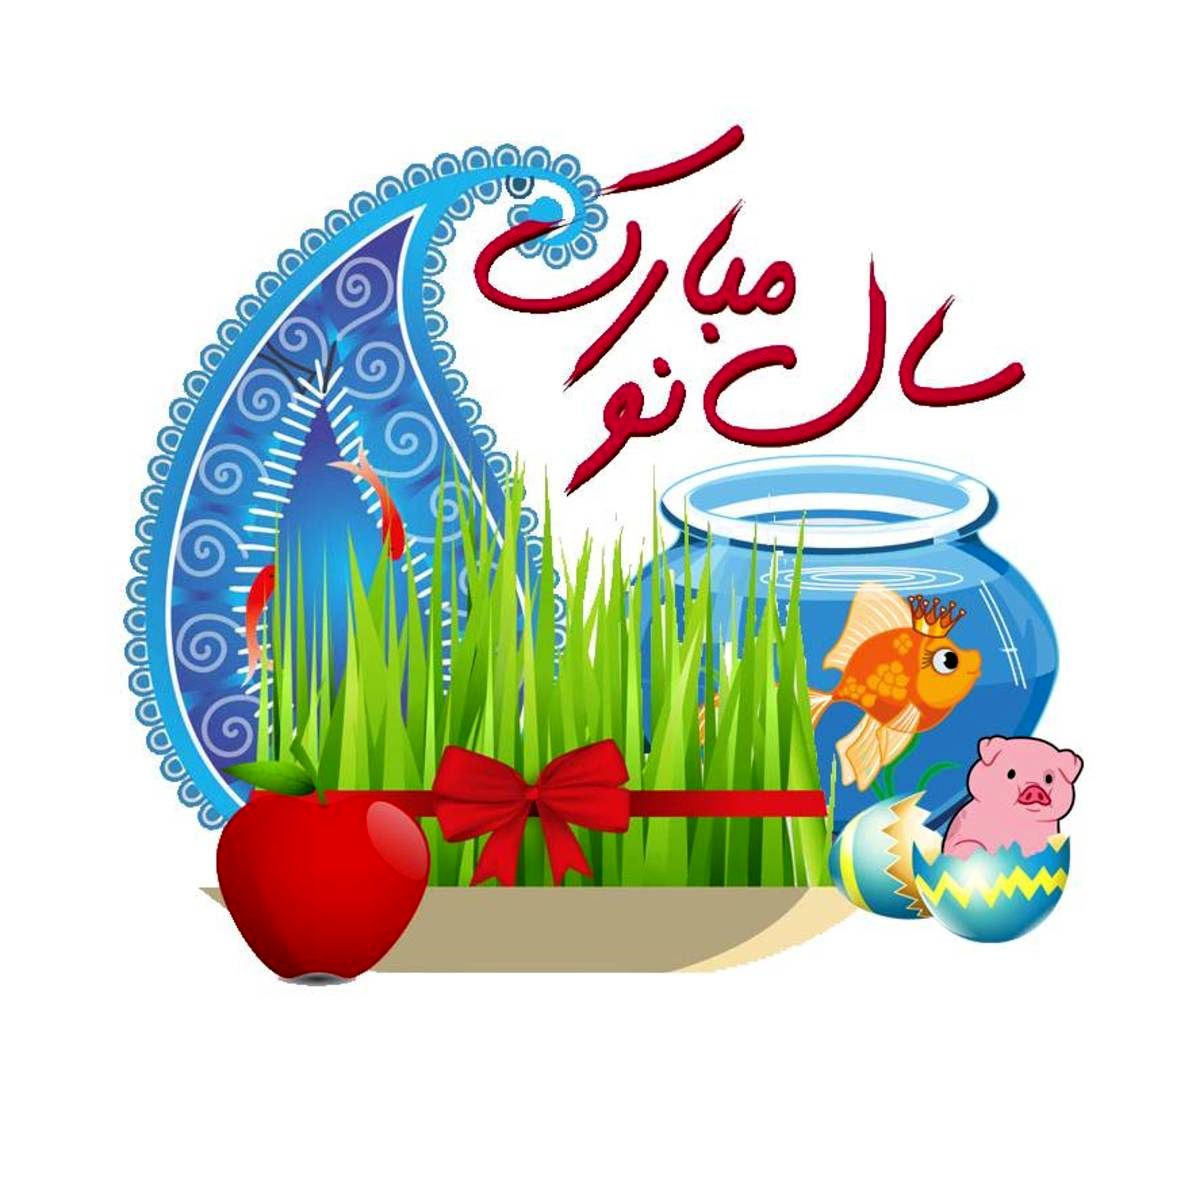 زیباترین پیامک های تبریک عید نوروز 1401